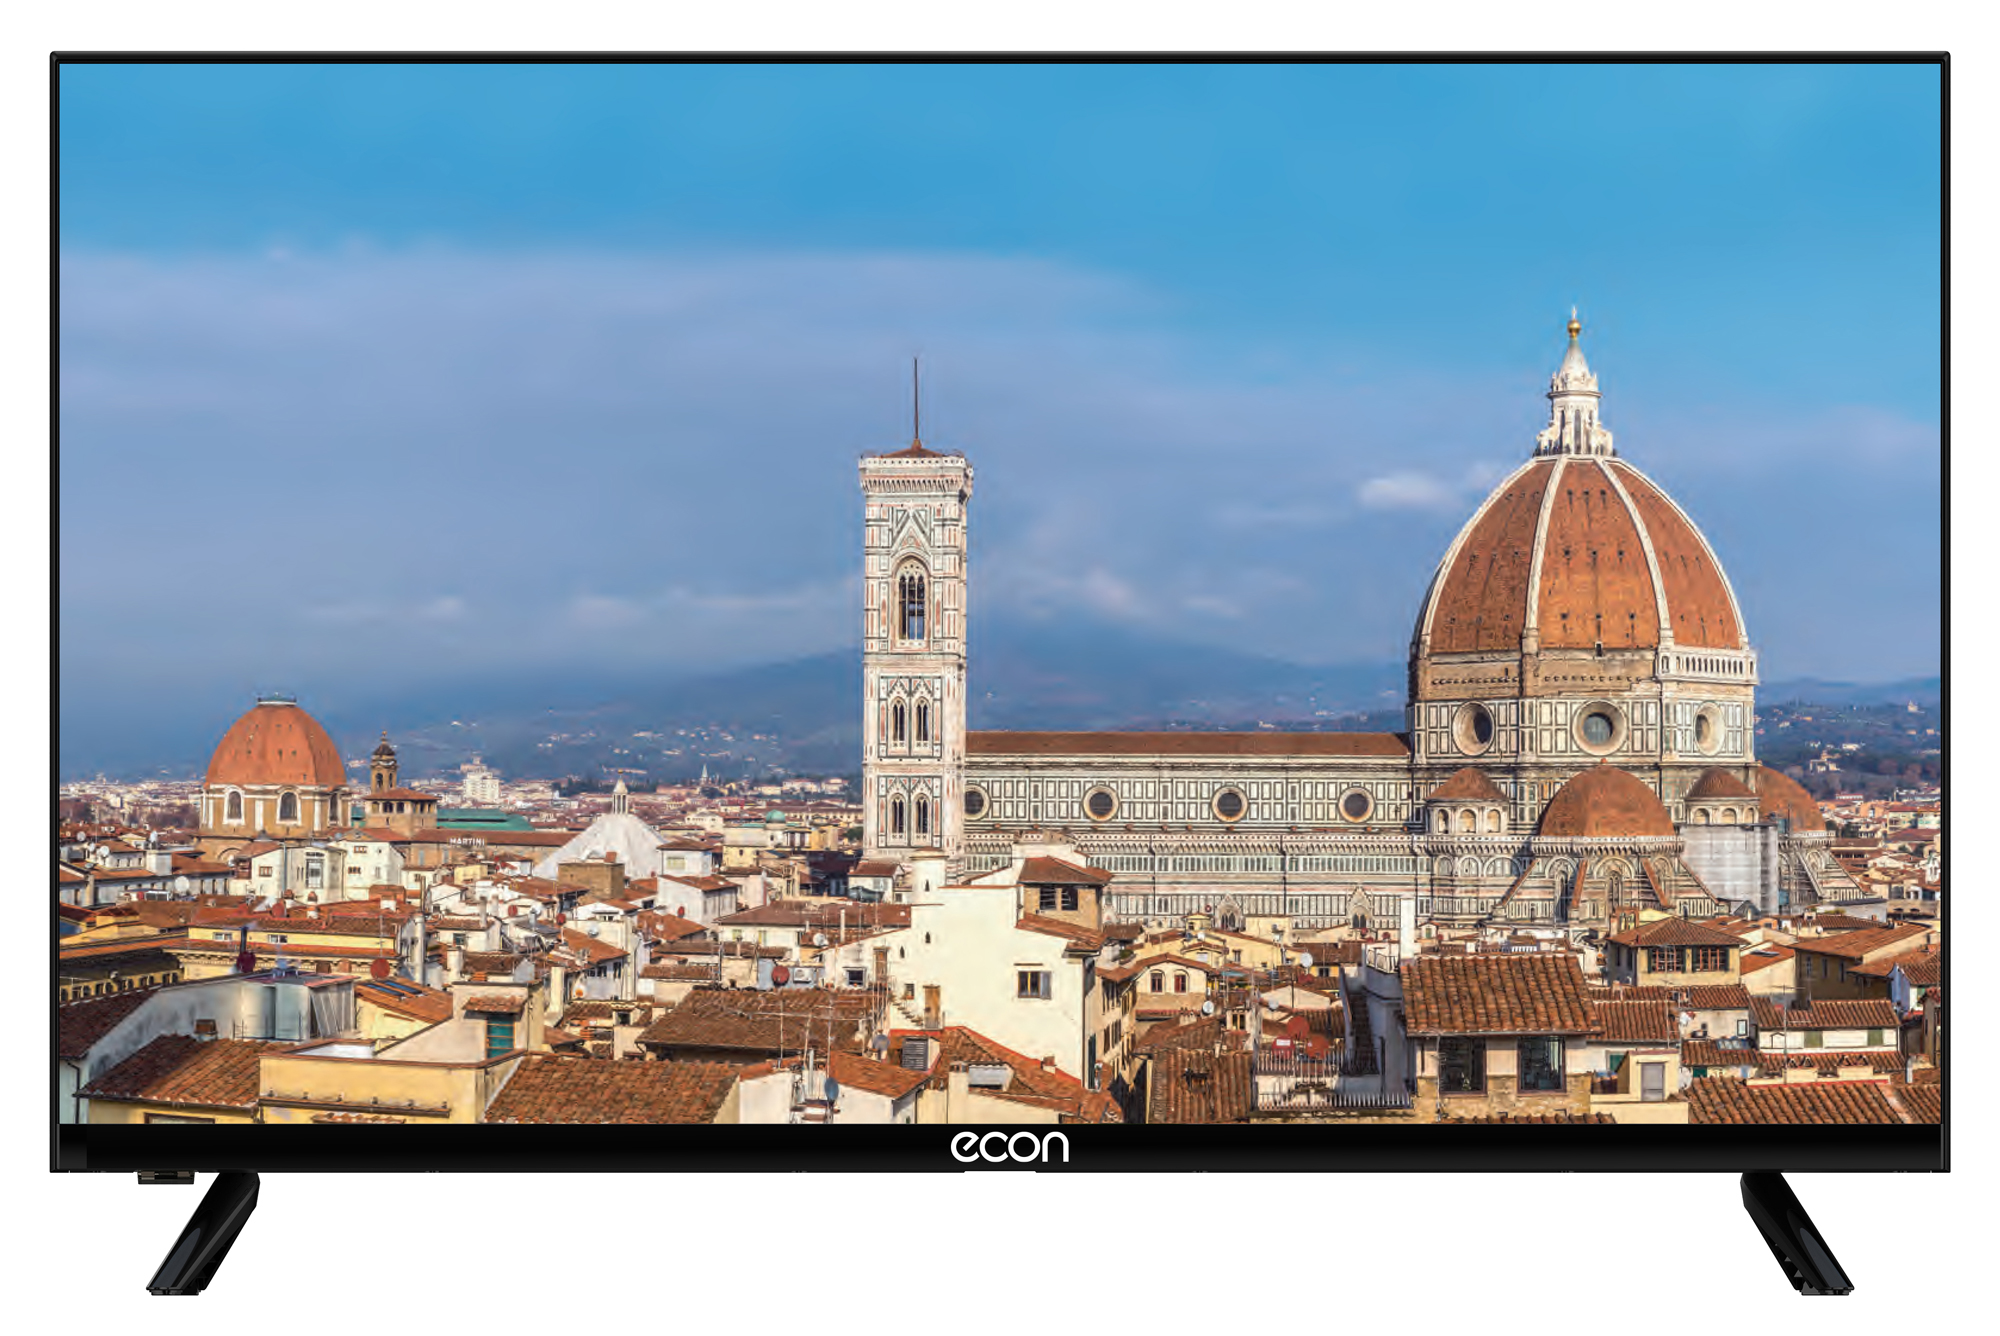 Картинка Телевизор ECON EX-32HT010B по разумной цене купить в интернет магазине mall.su